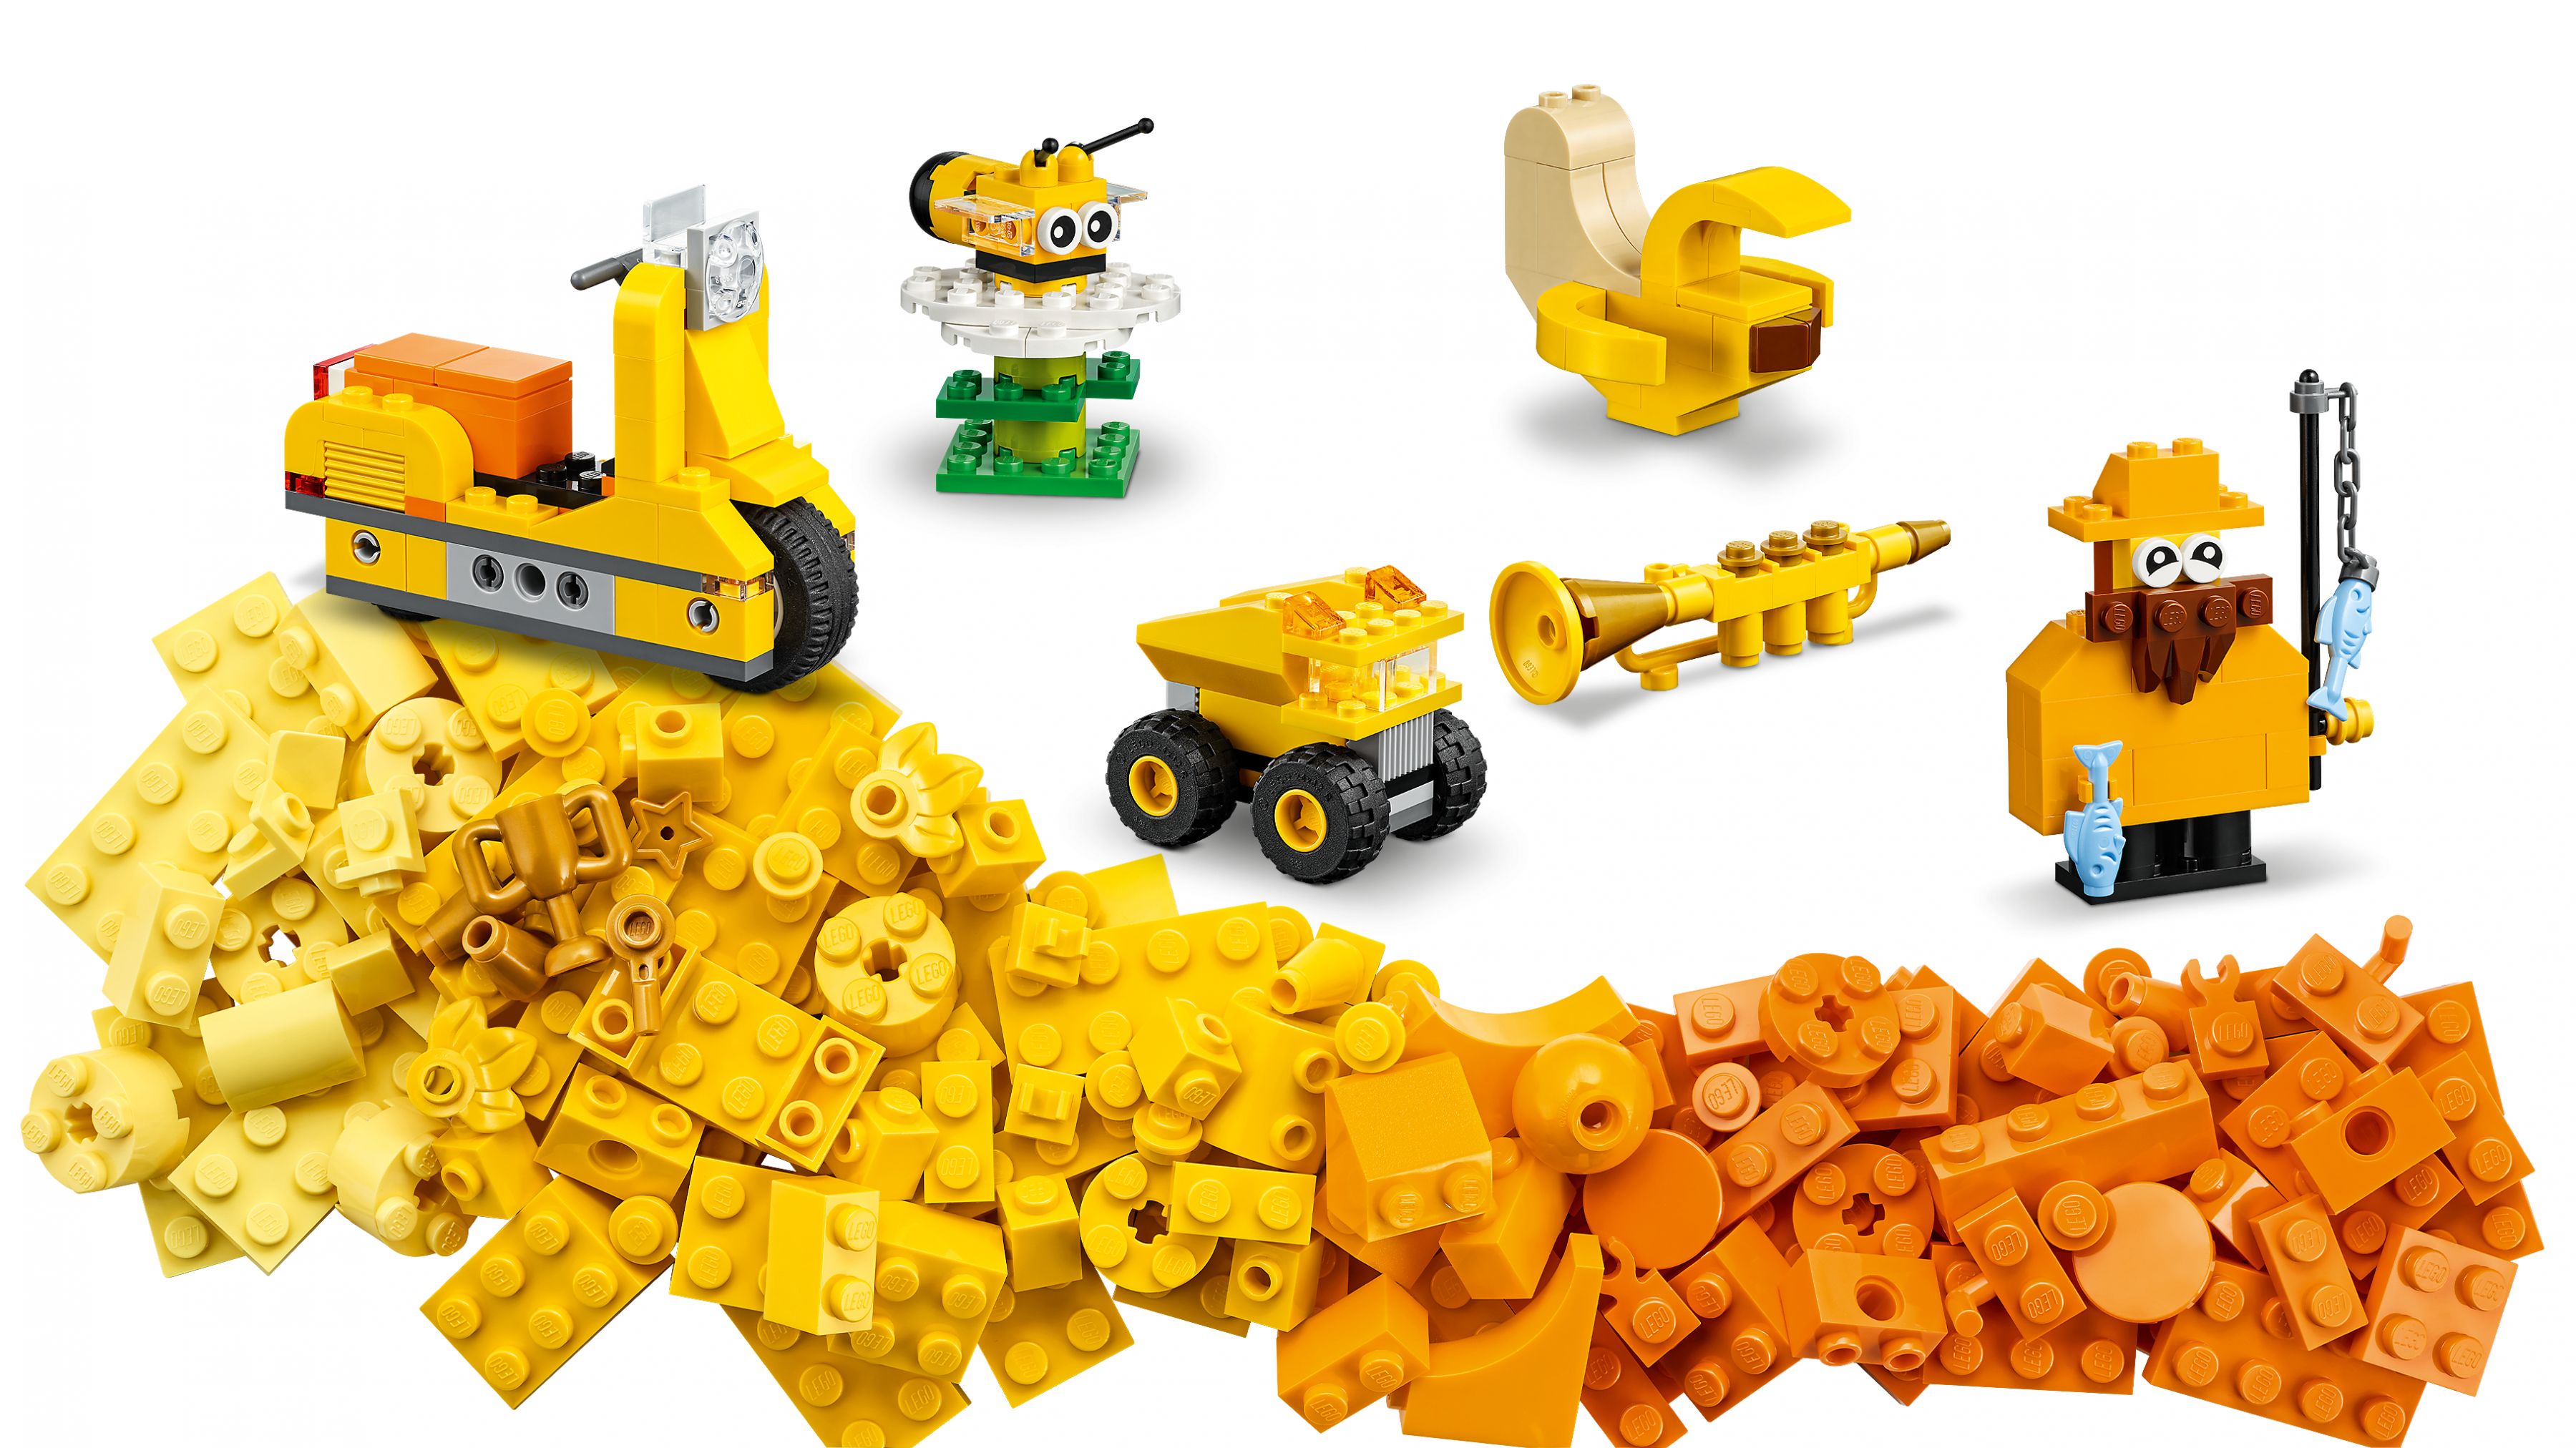 LEGO Classic 11020 Gemeinsam bauen LEGO_11020_WEB_SEC09_NOBG.jpg